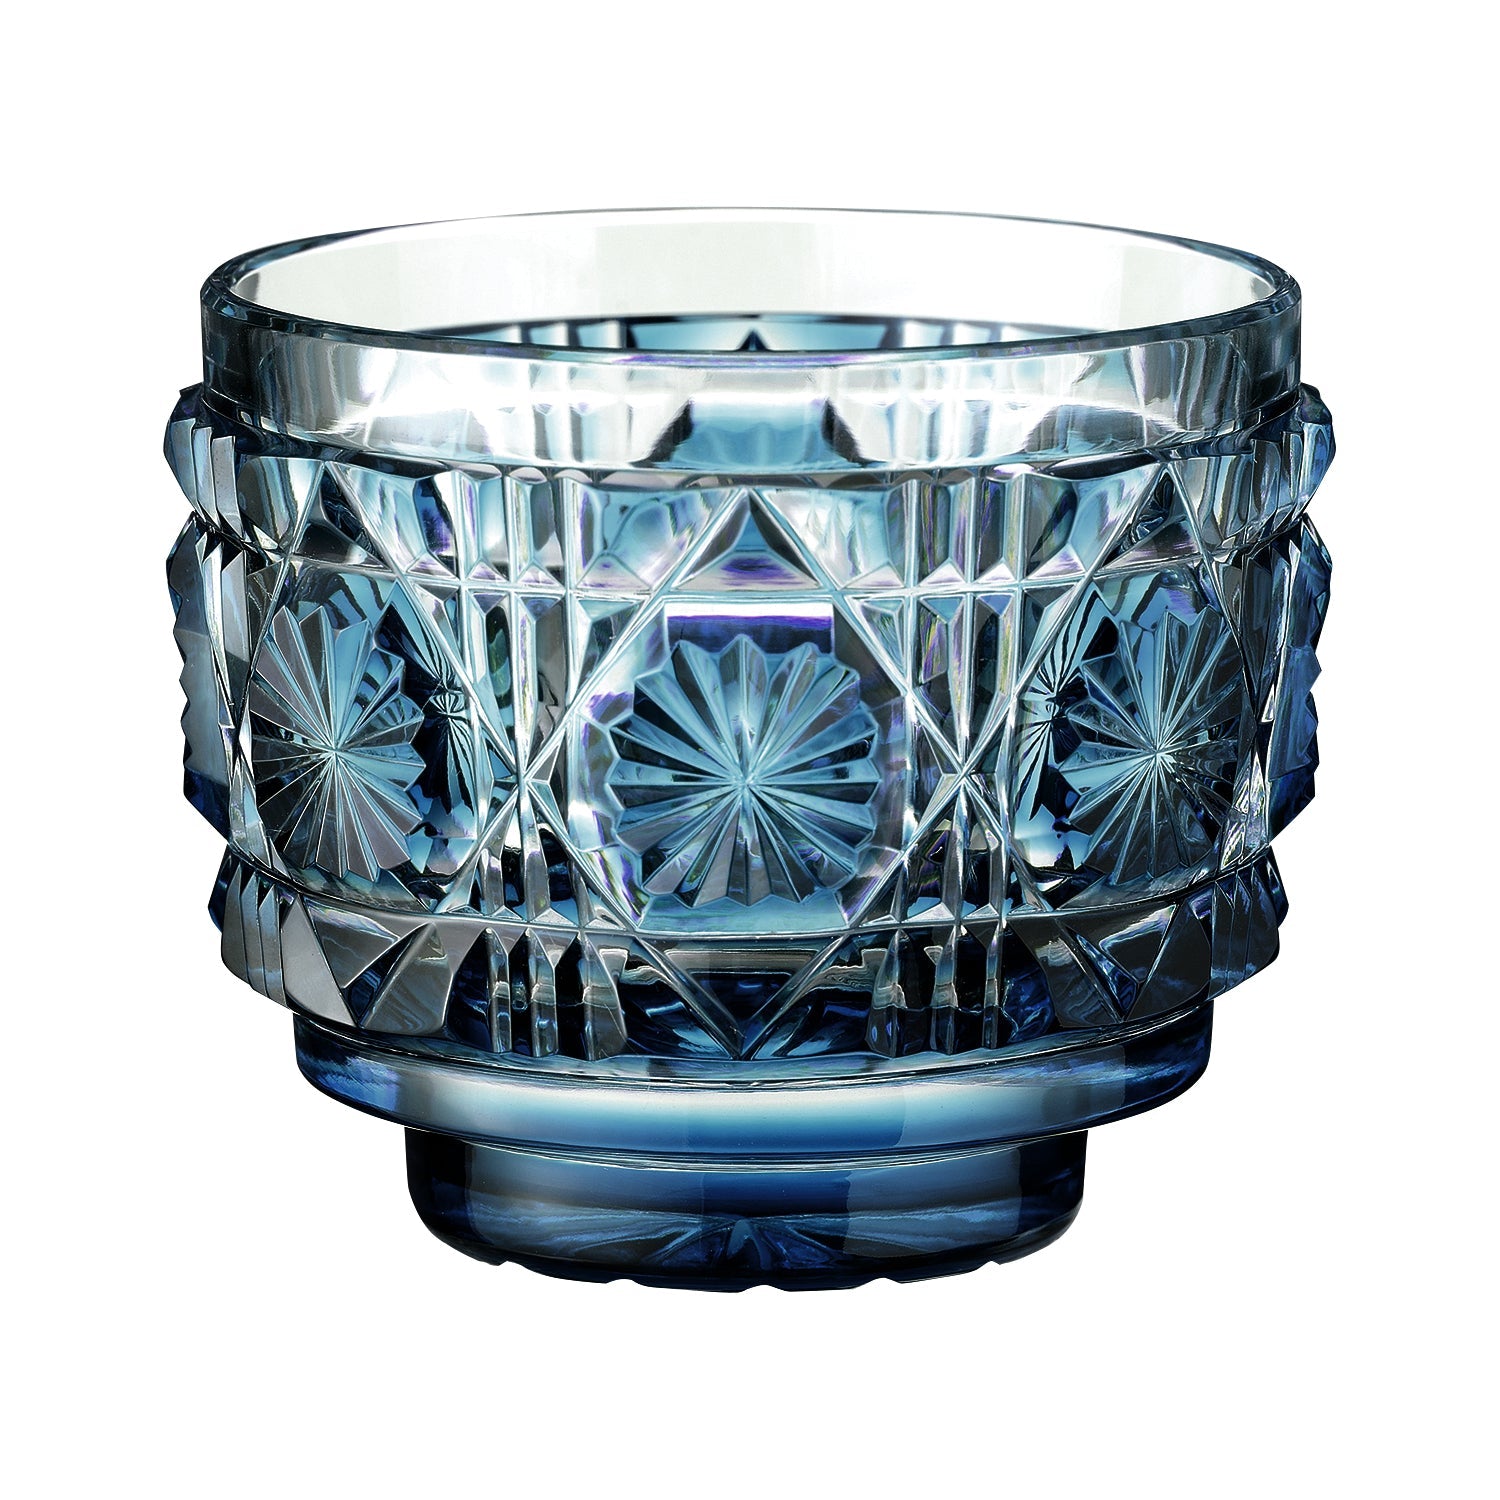 日本工藝堂】 薩摩切子日式杯玻璃杯清酒杯深藍色SK-SA-4 | Hanaya